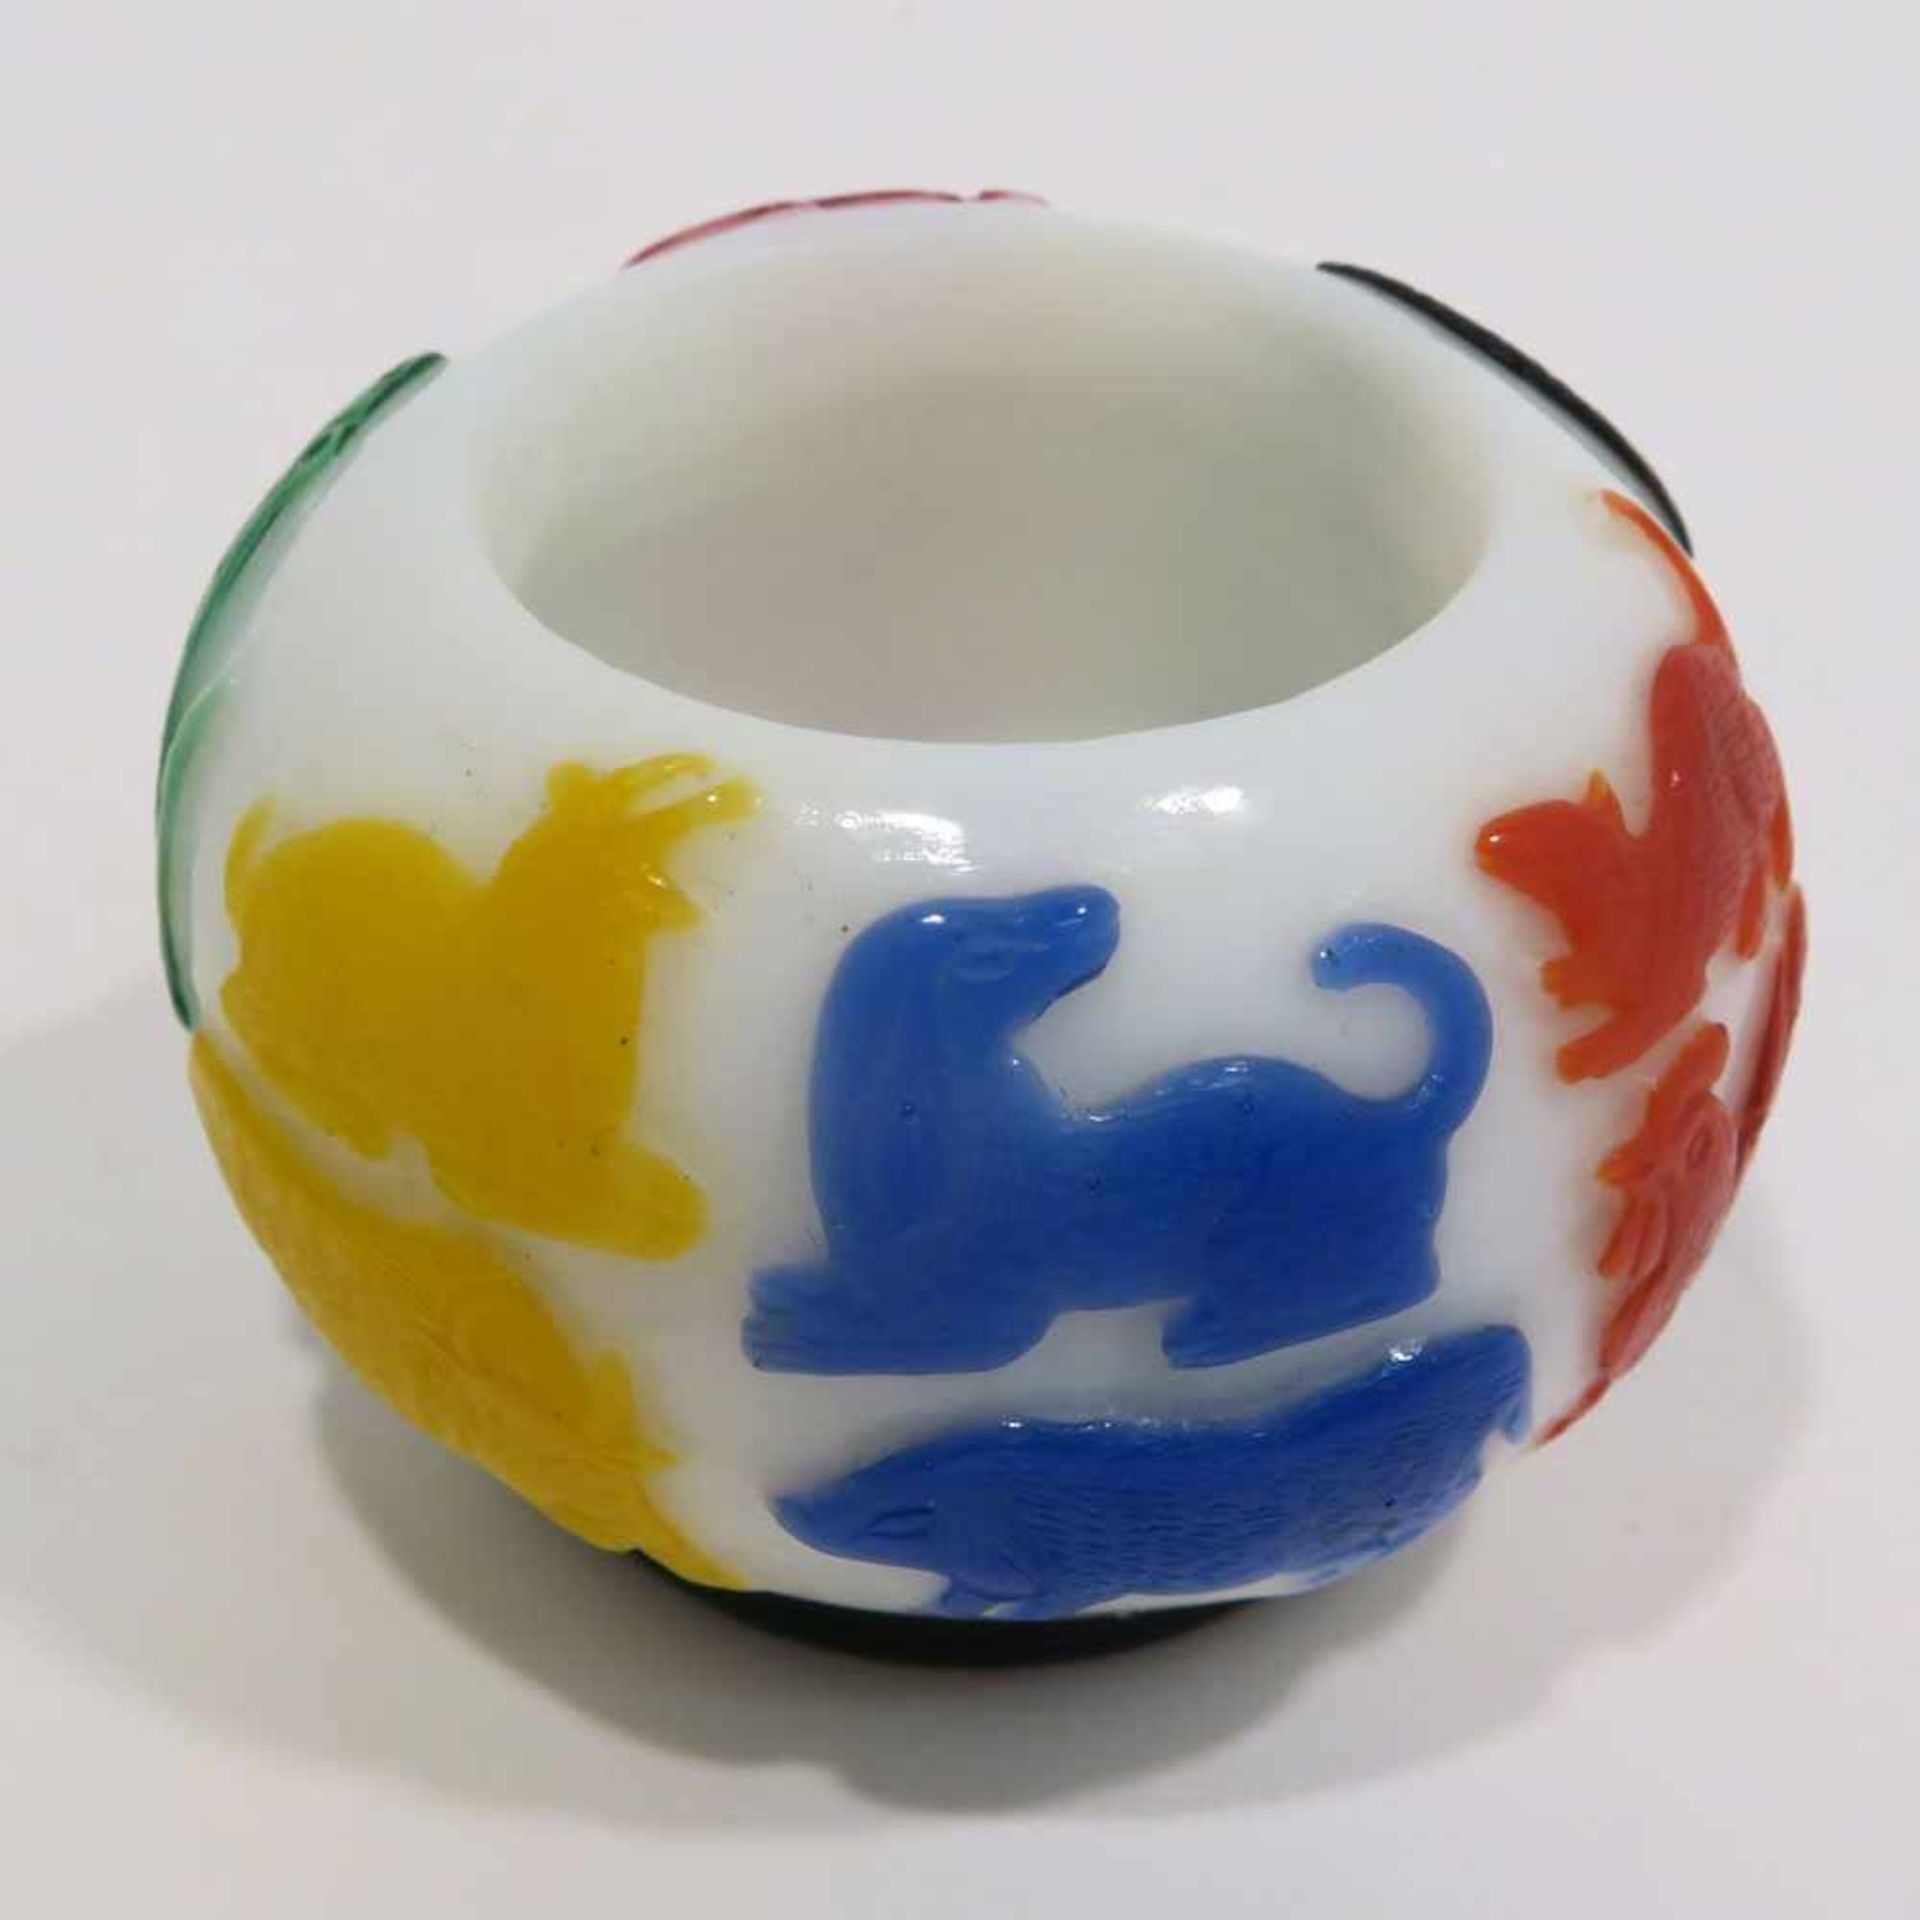 PinselwascherChina. Peking-Glas. Weiß mit mehrfarbigen Tiermotiven. H. 3,5 cm, Ø ca. 5,5 cm. - Bild 2 aus 10